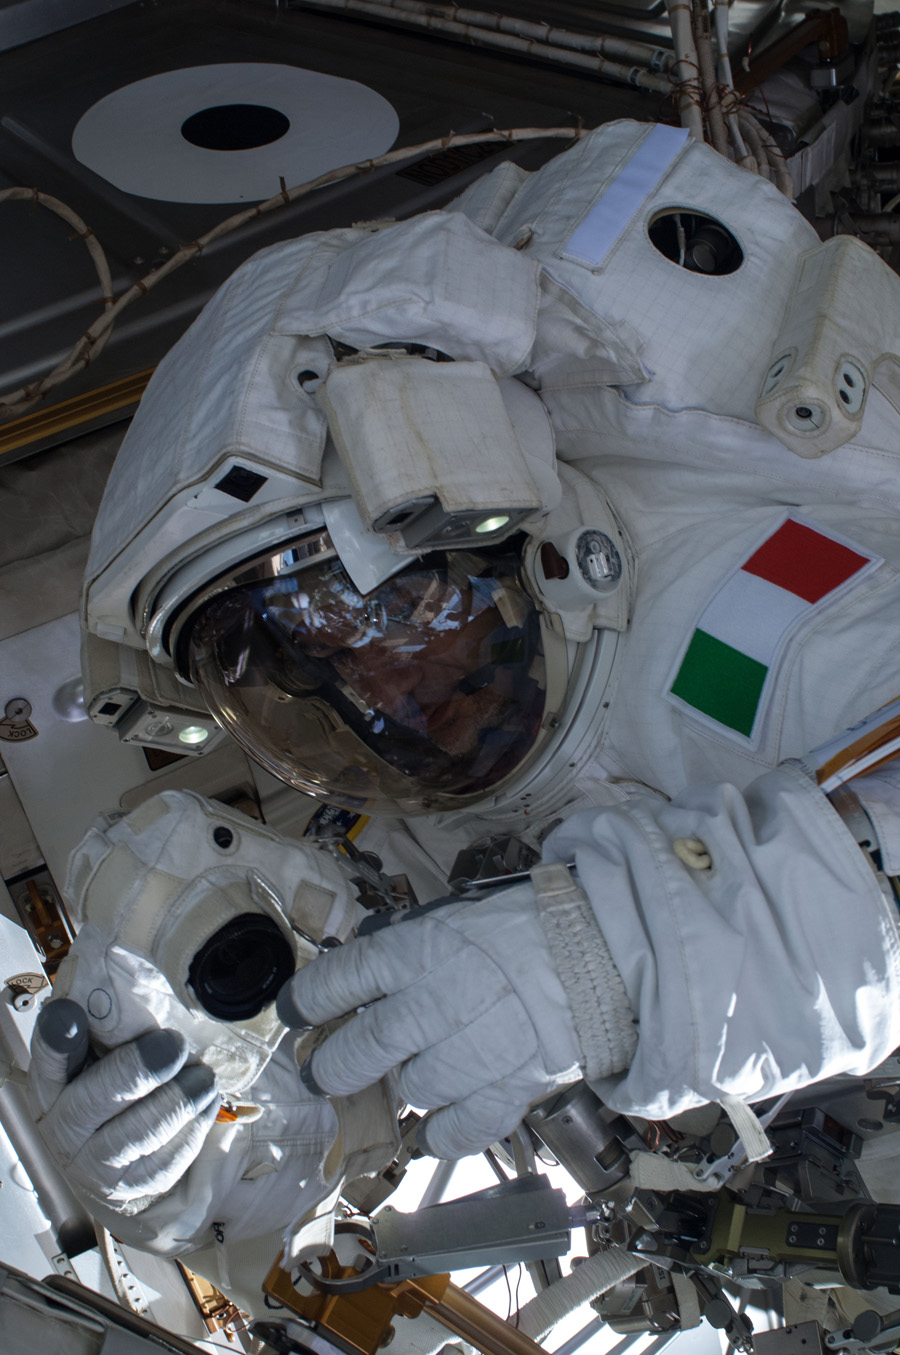 L'astronaute de l'ESA Luca Parmitano travaille sur la Station spatiale internationale lors d'une sortie dans l'espace le 16 juillet 2013.  Un peu plus d'une heure après le début de la sortie dans l'espace, Parmitano a signalé que de l'eau flottait derrière sa tête à l'intérieur de son casque.  L'eau n'était pas un danger immédiat pour la santé de Parmitano, mais Mission Control a décidé de mettre fin à la sortie dans l'espace plus tôt.  Cette image a été publiée le 16 juillet 2013.